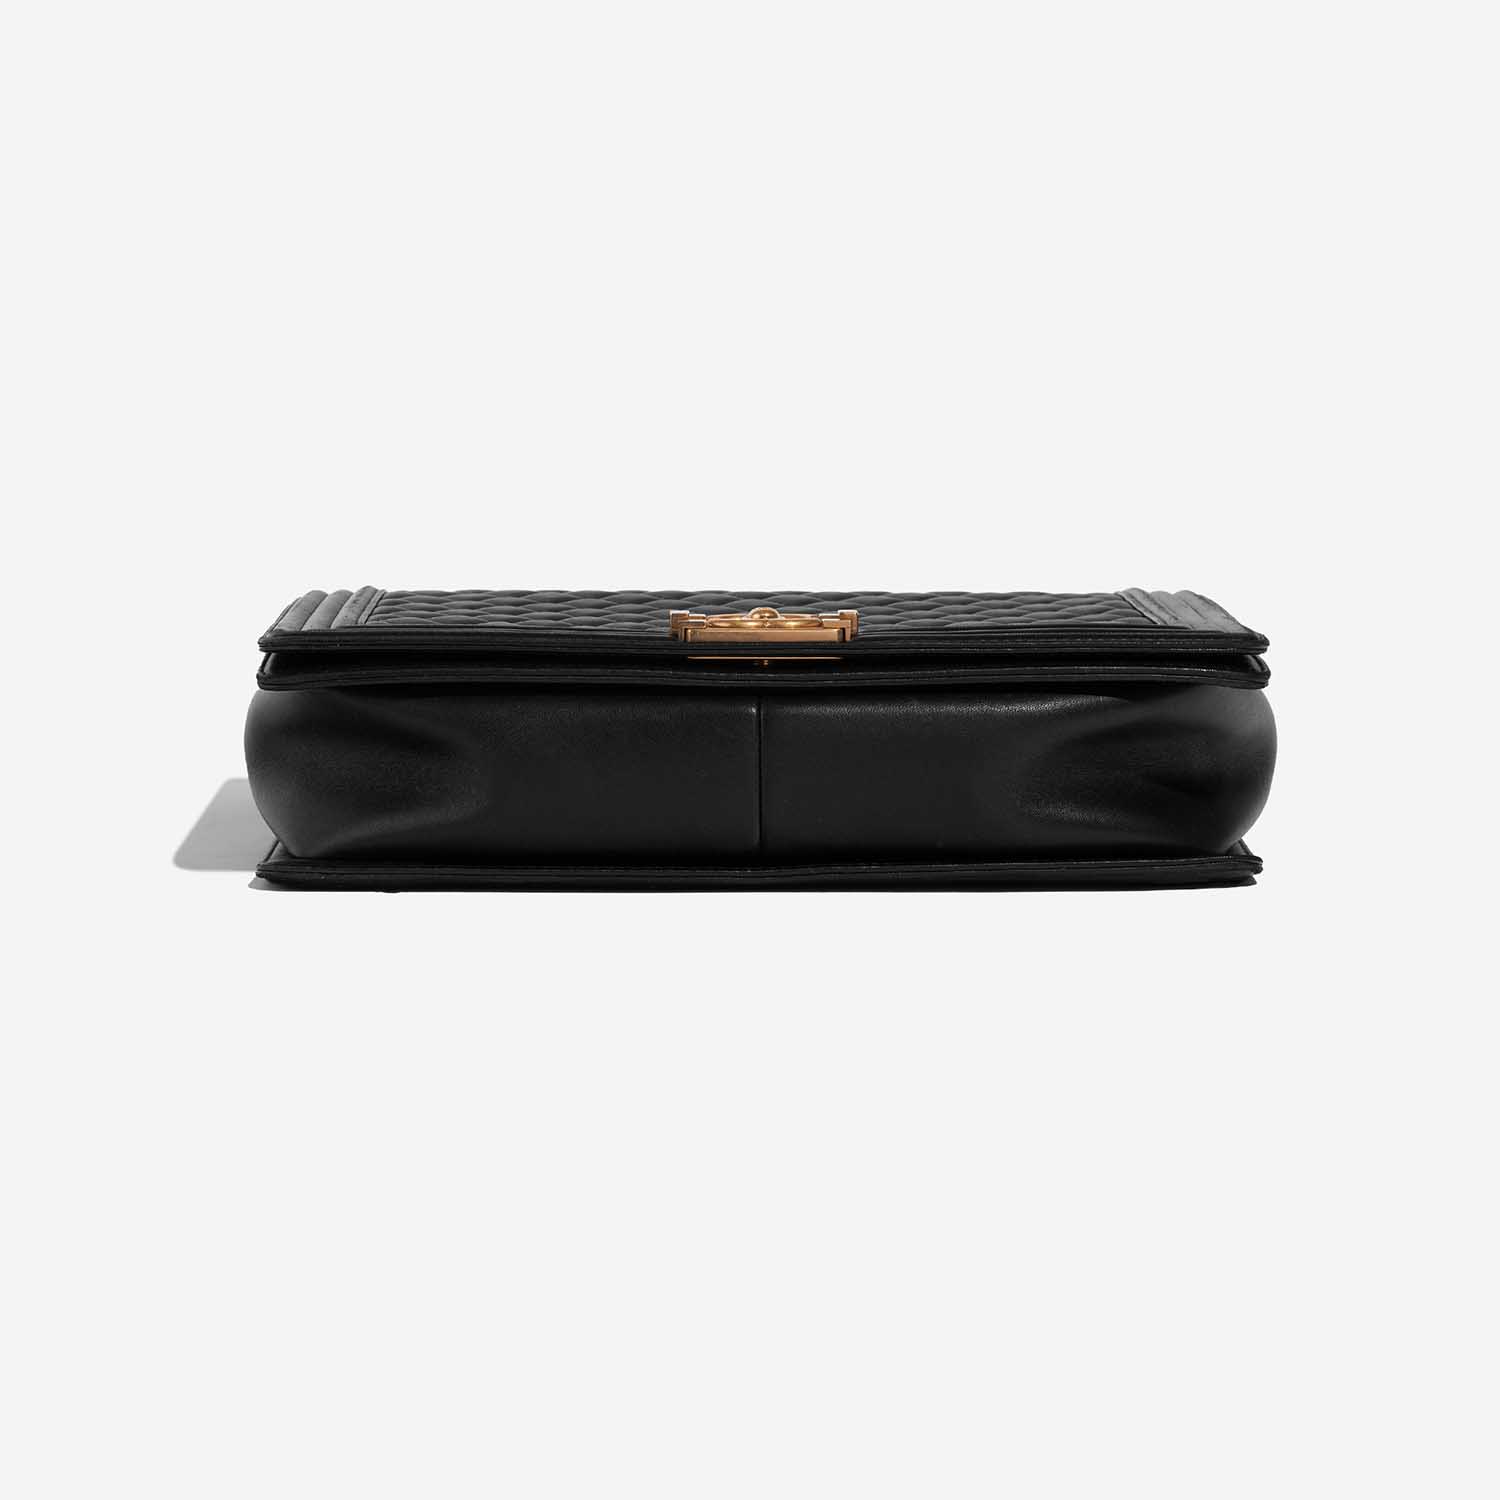 Chanel Boy Large Black Bottom | Verkaufen Sie Ihre Designer-Tasche auf Saclab.com